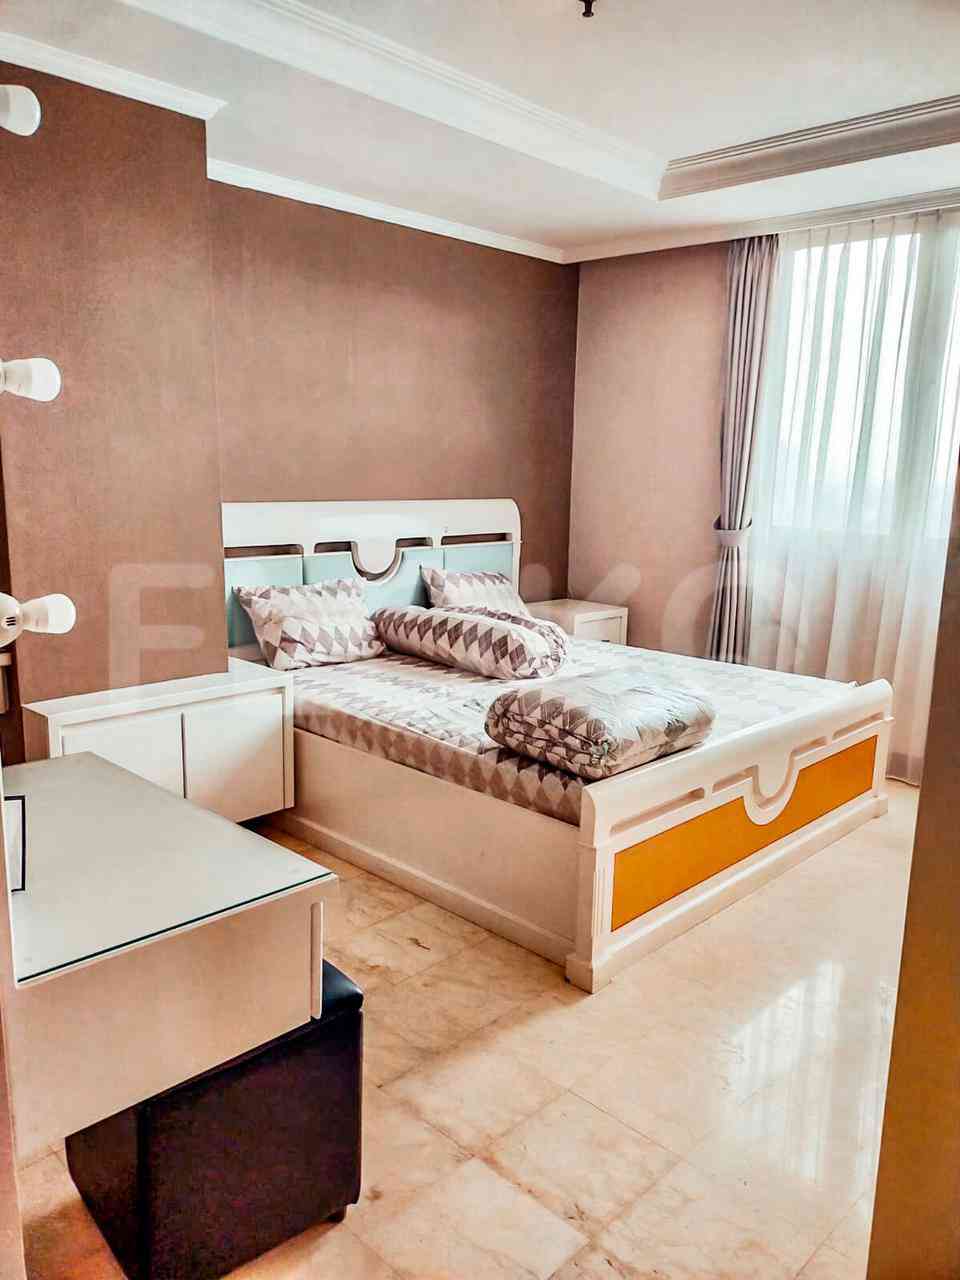 3 Bedroom on 25th Floor for Rent in Puri Imperium Apartment - fku6c4 5